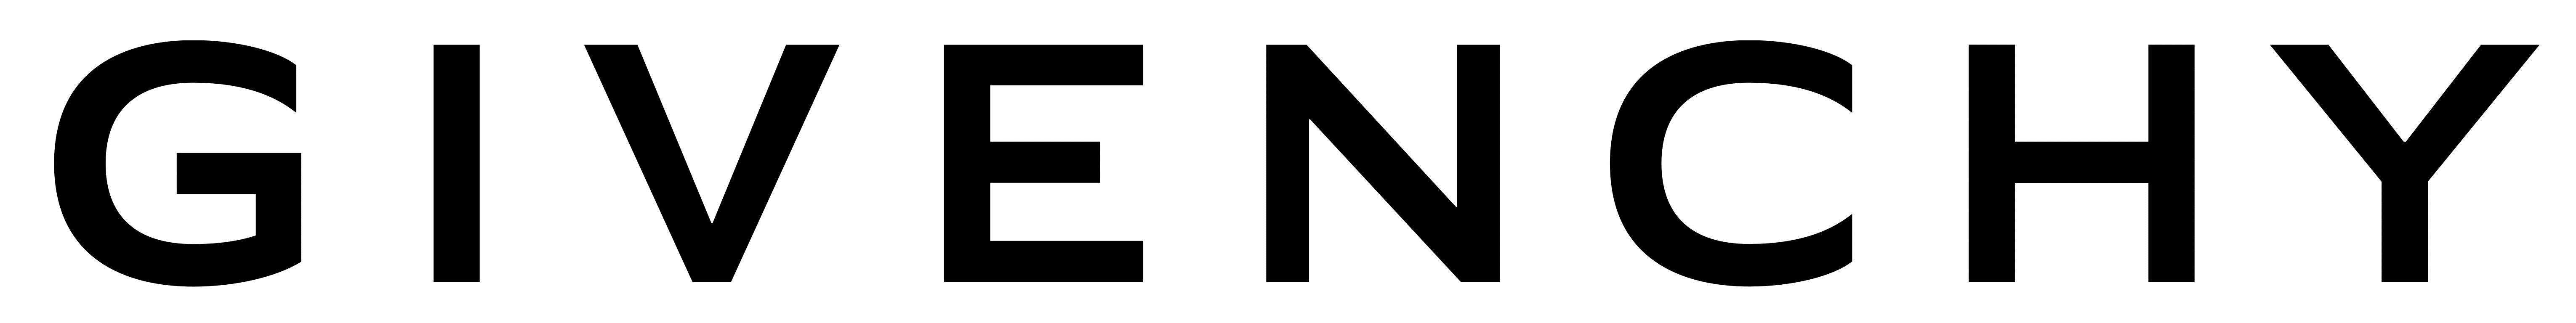 Givenchy Logos